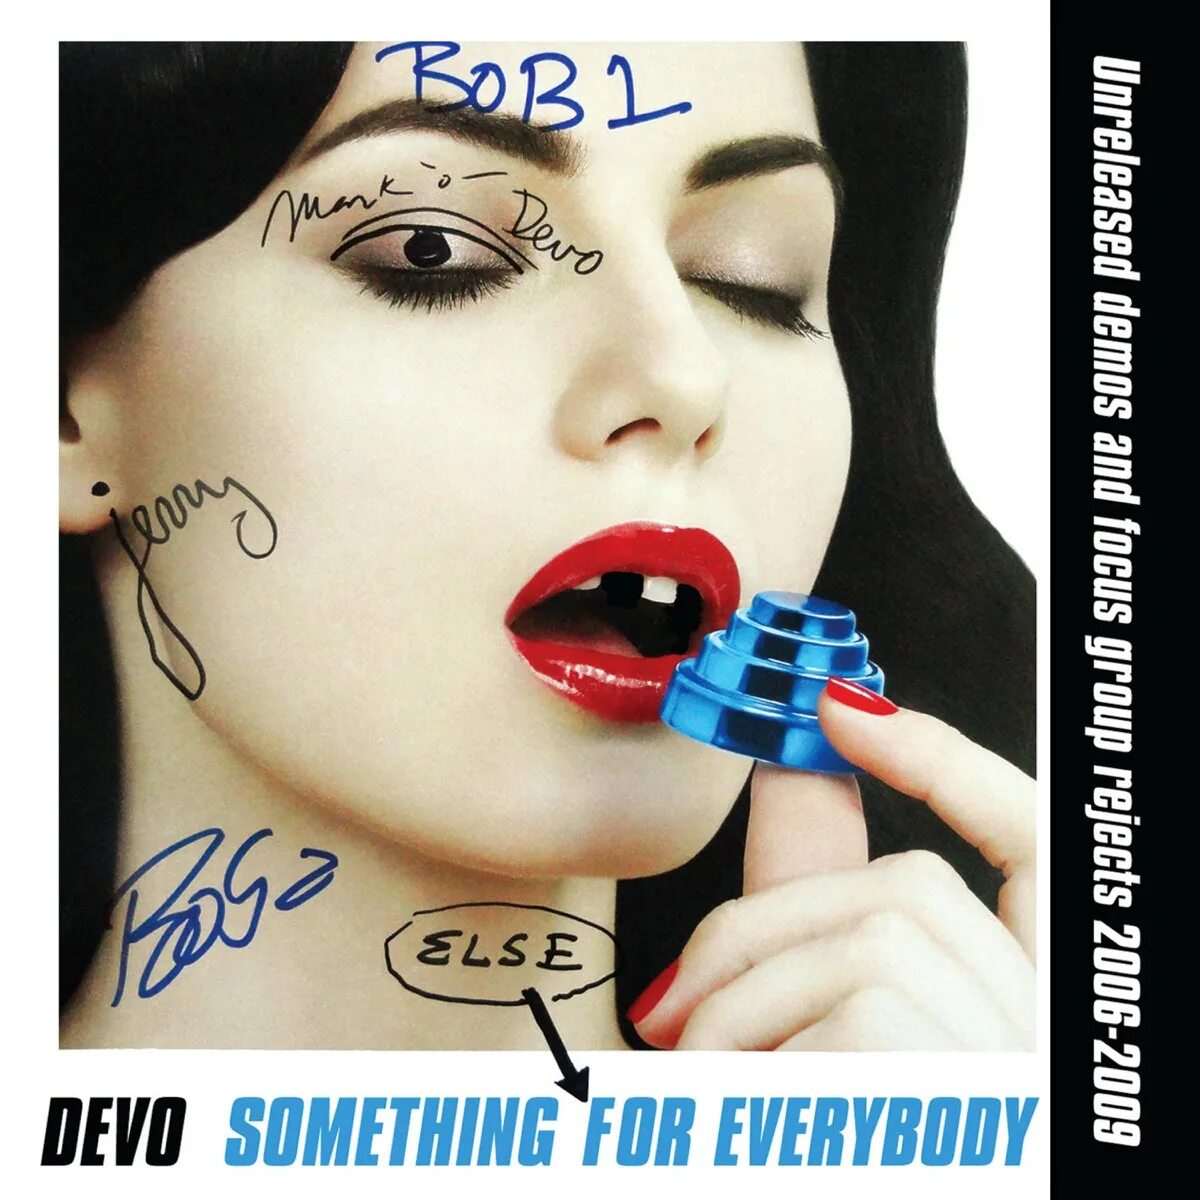 Something for everyone. Devo. Devo something for Everybody. Something else. 1961 - Something for Everybody.